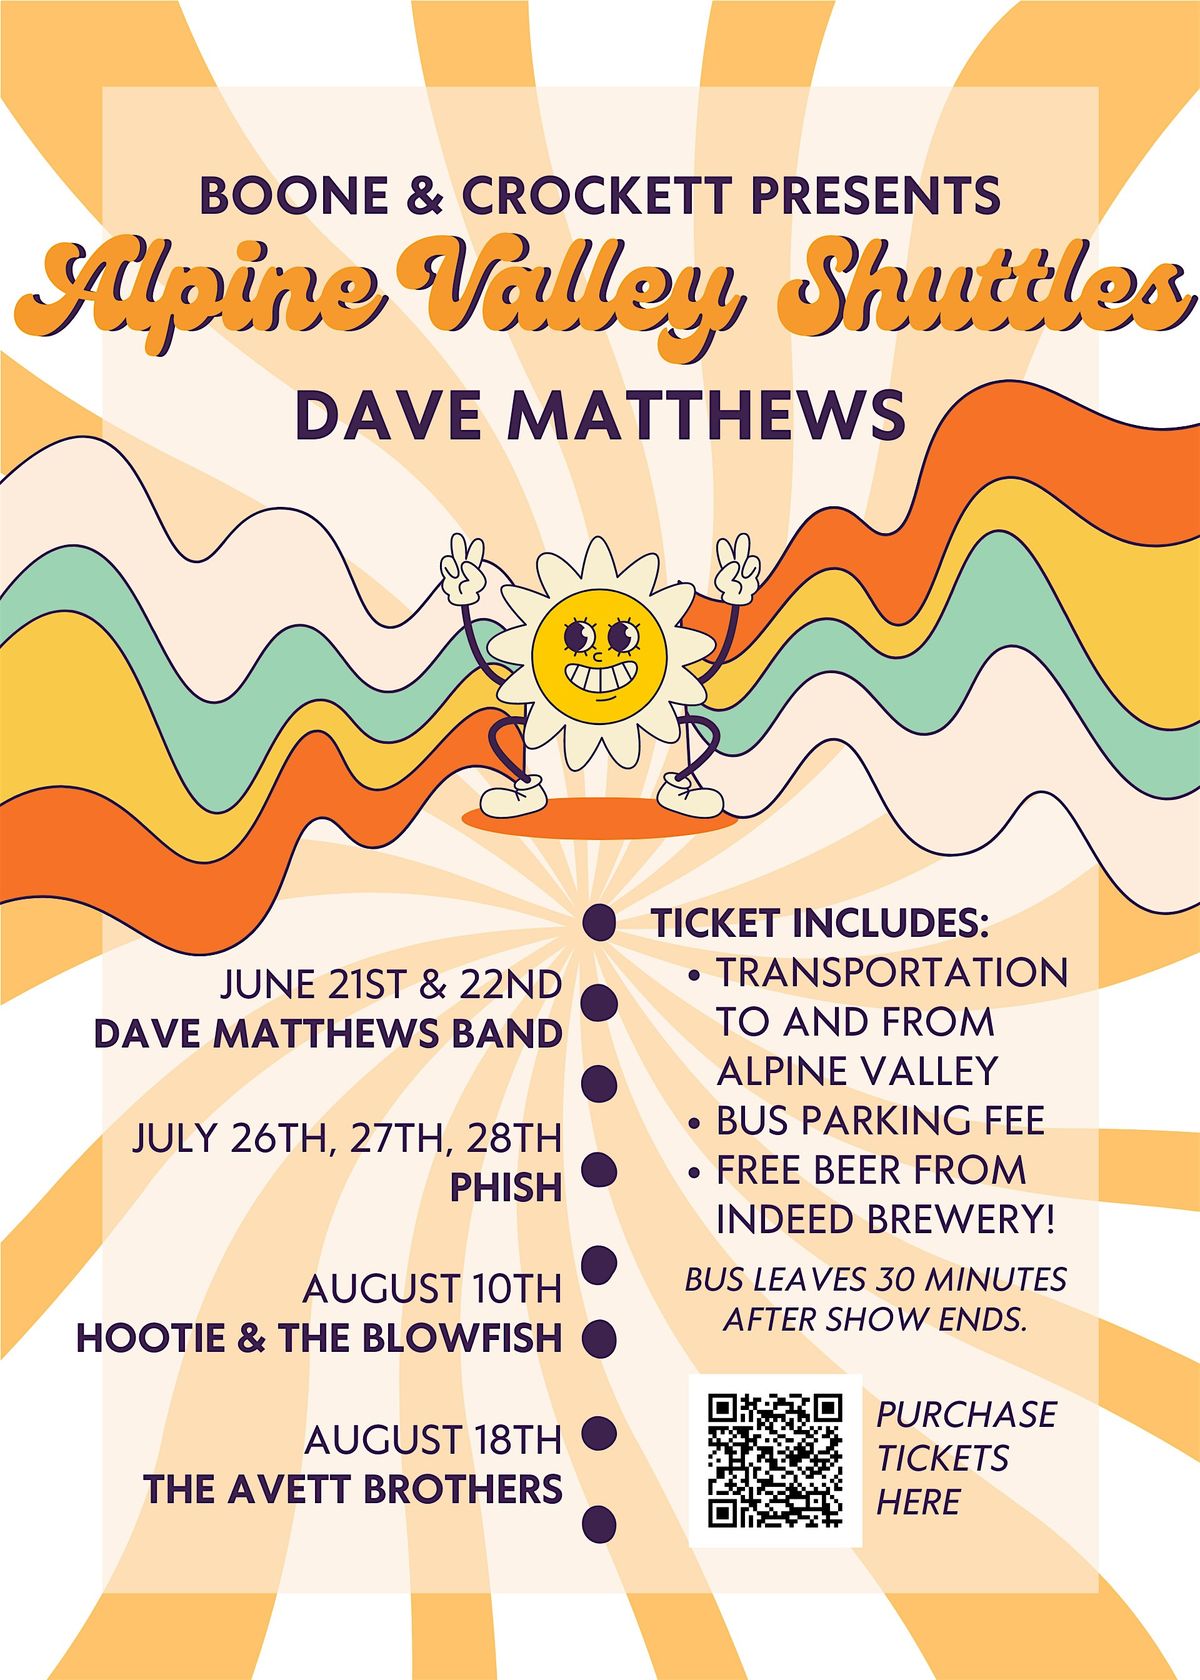 Alpine Valley Shuttle to Dave Matthews - FRIDAY